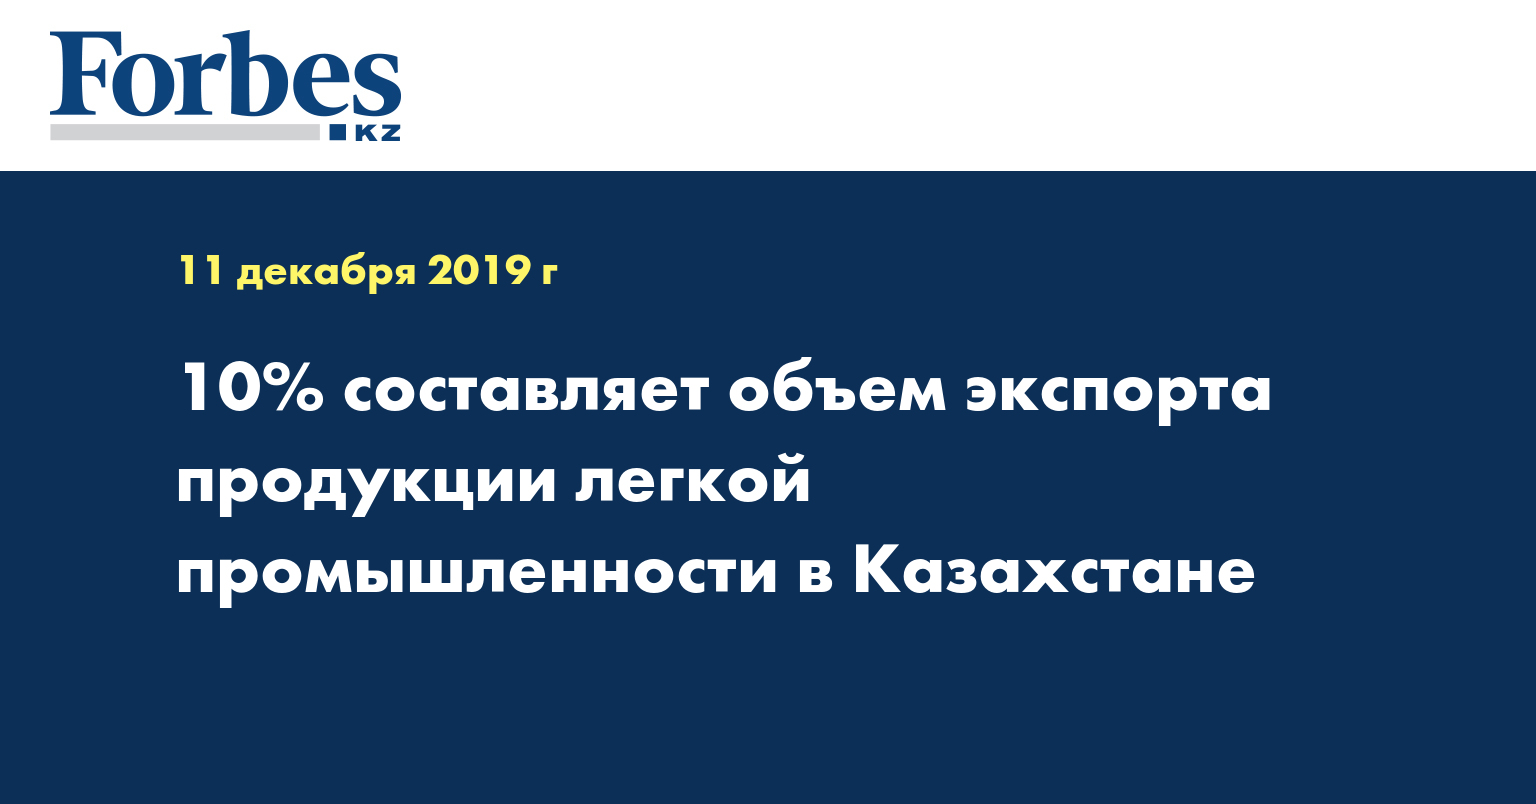 10% составляет объем экспорта продукции легкой промышленности в Казахстане